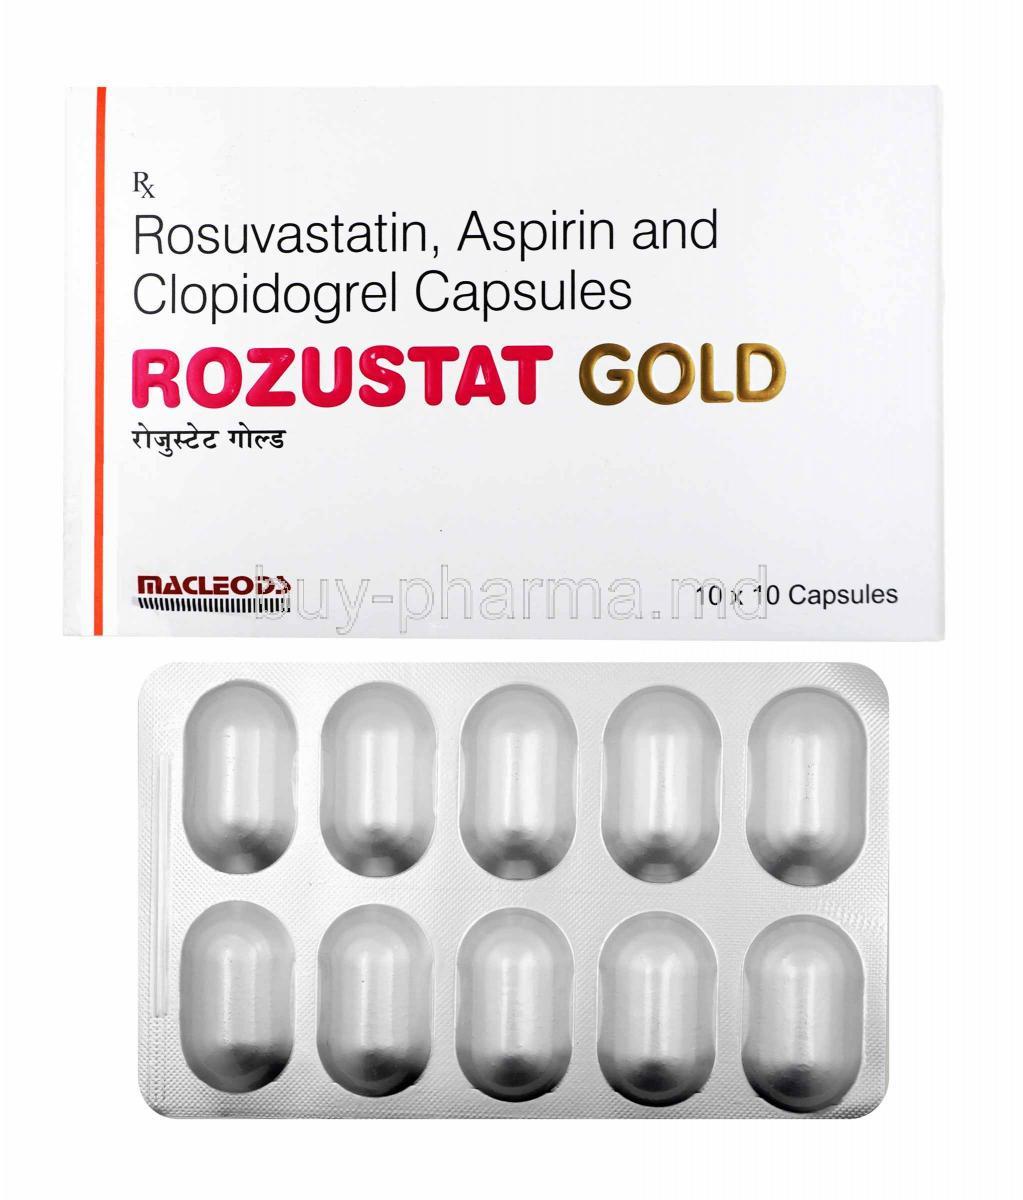 Rozustat Gold, Aspirin, Rosuvastatin and Clopidogrel box and capsules